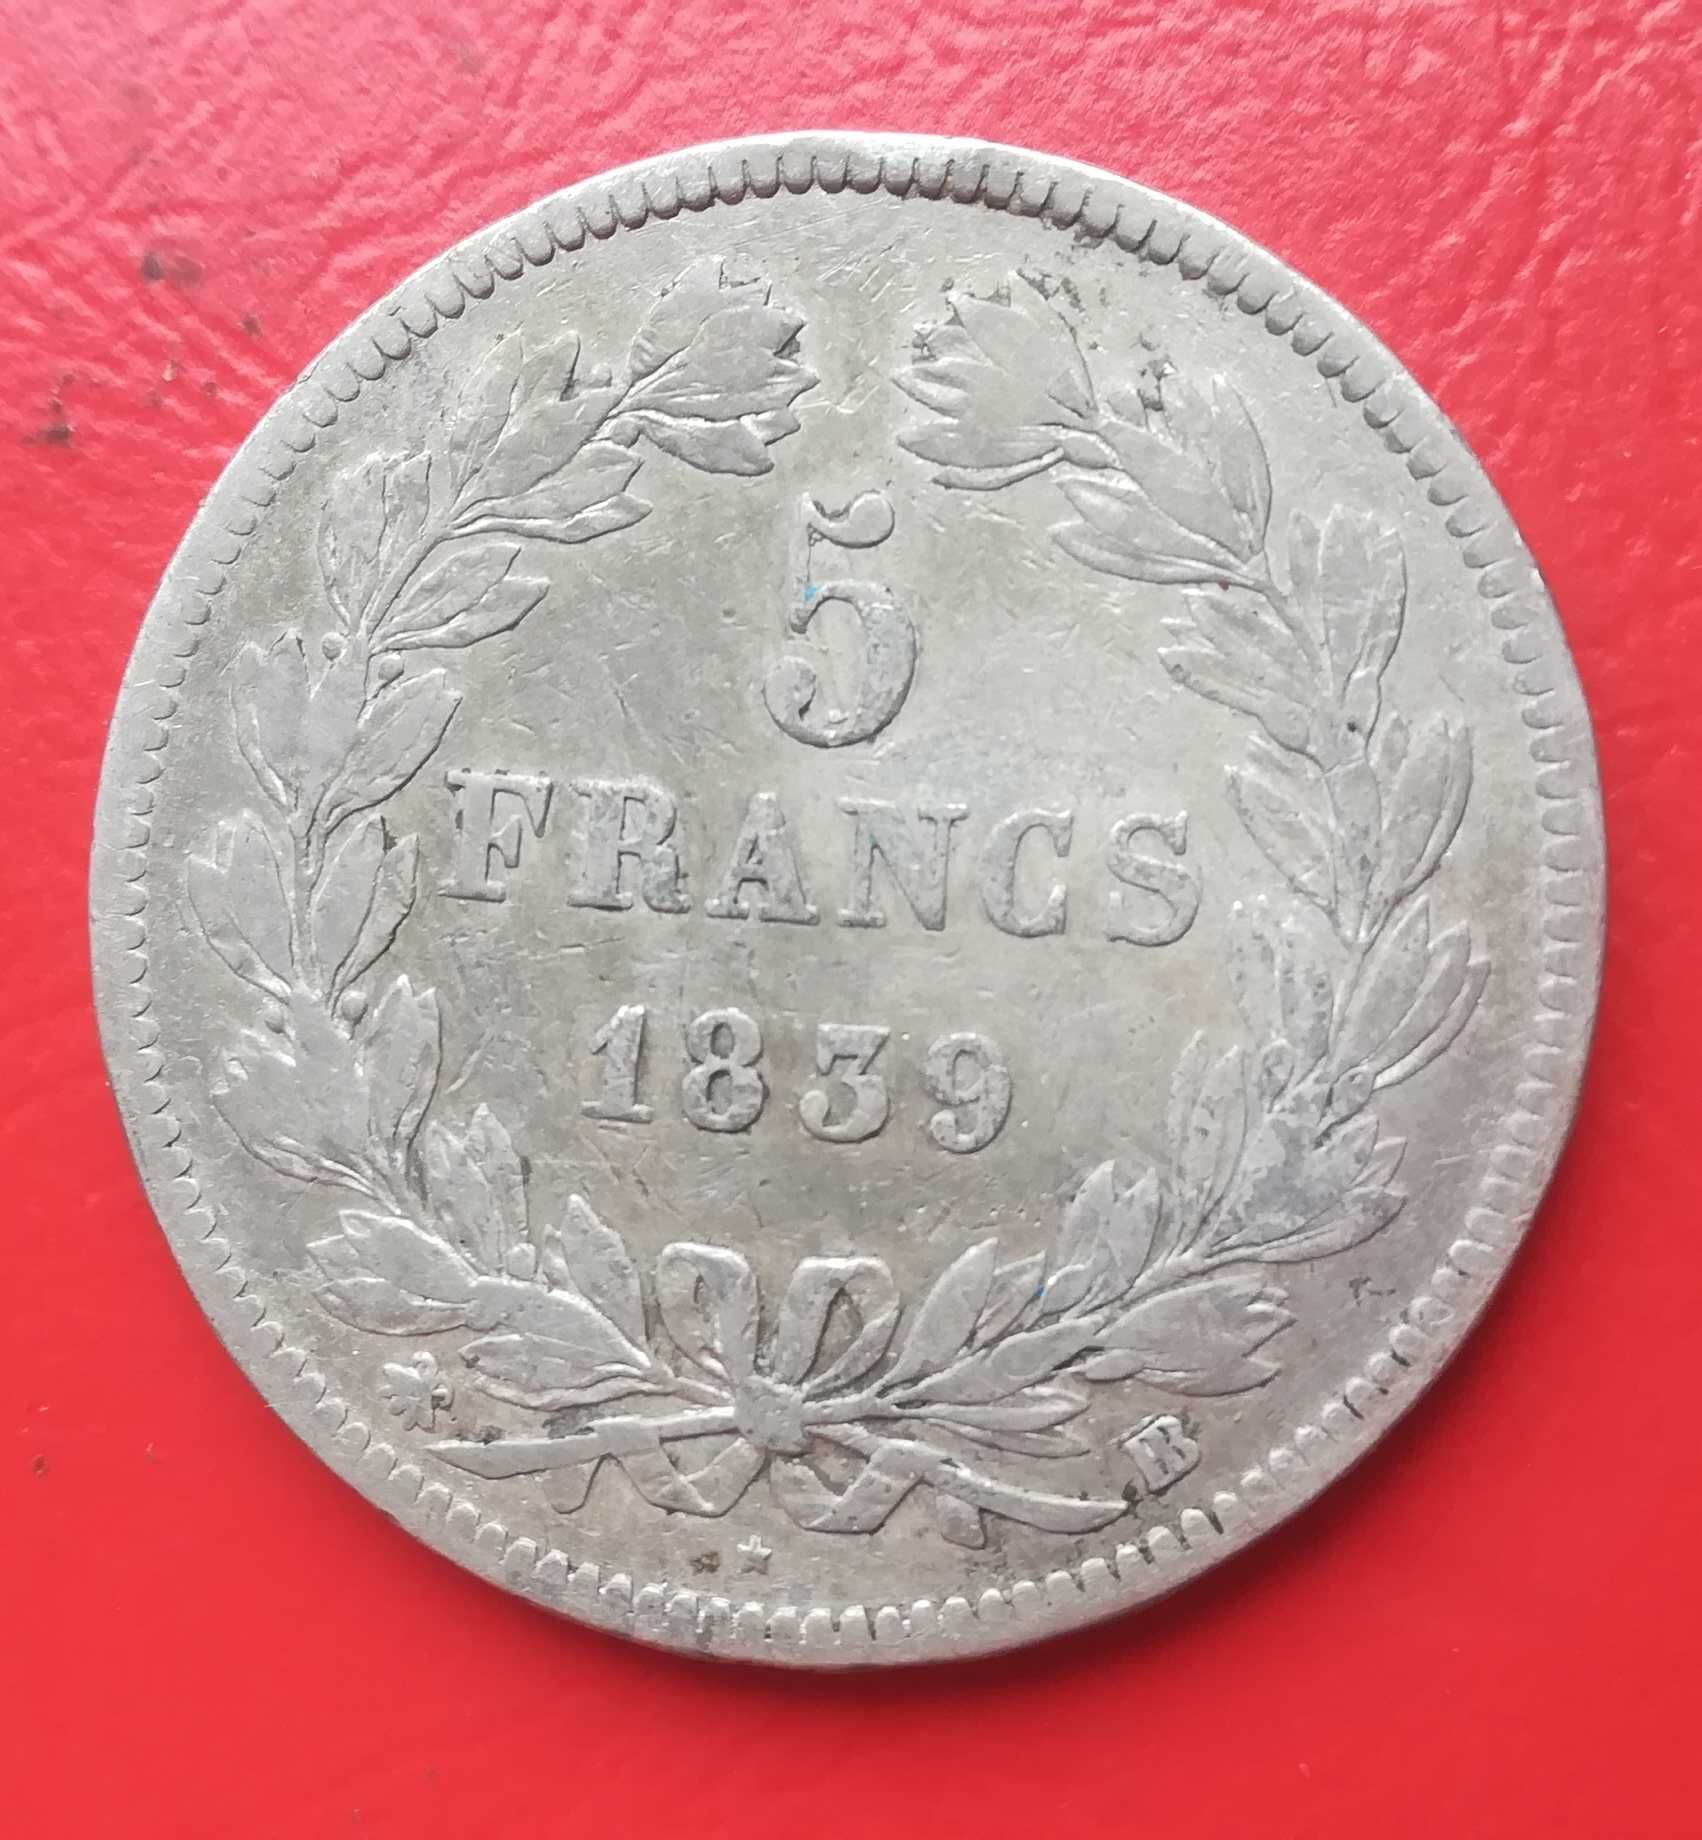 Moneta srebrna srebro 5 franków Francja z 1839 roku typ BB. Srebrne.